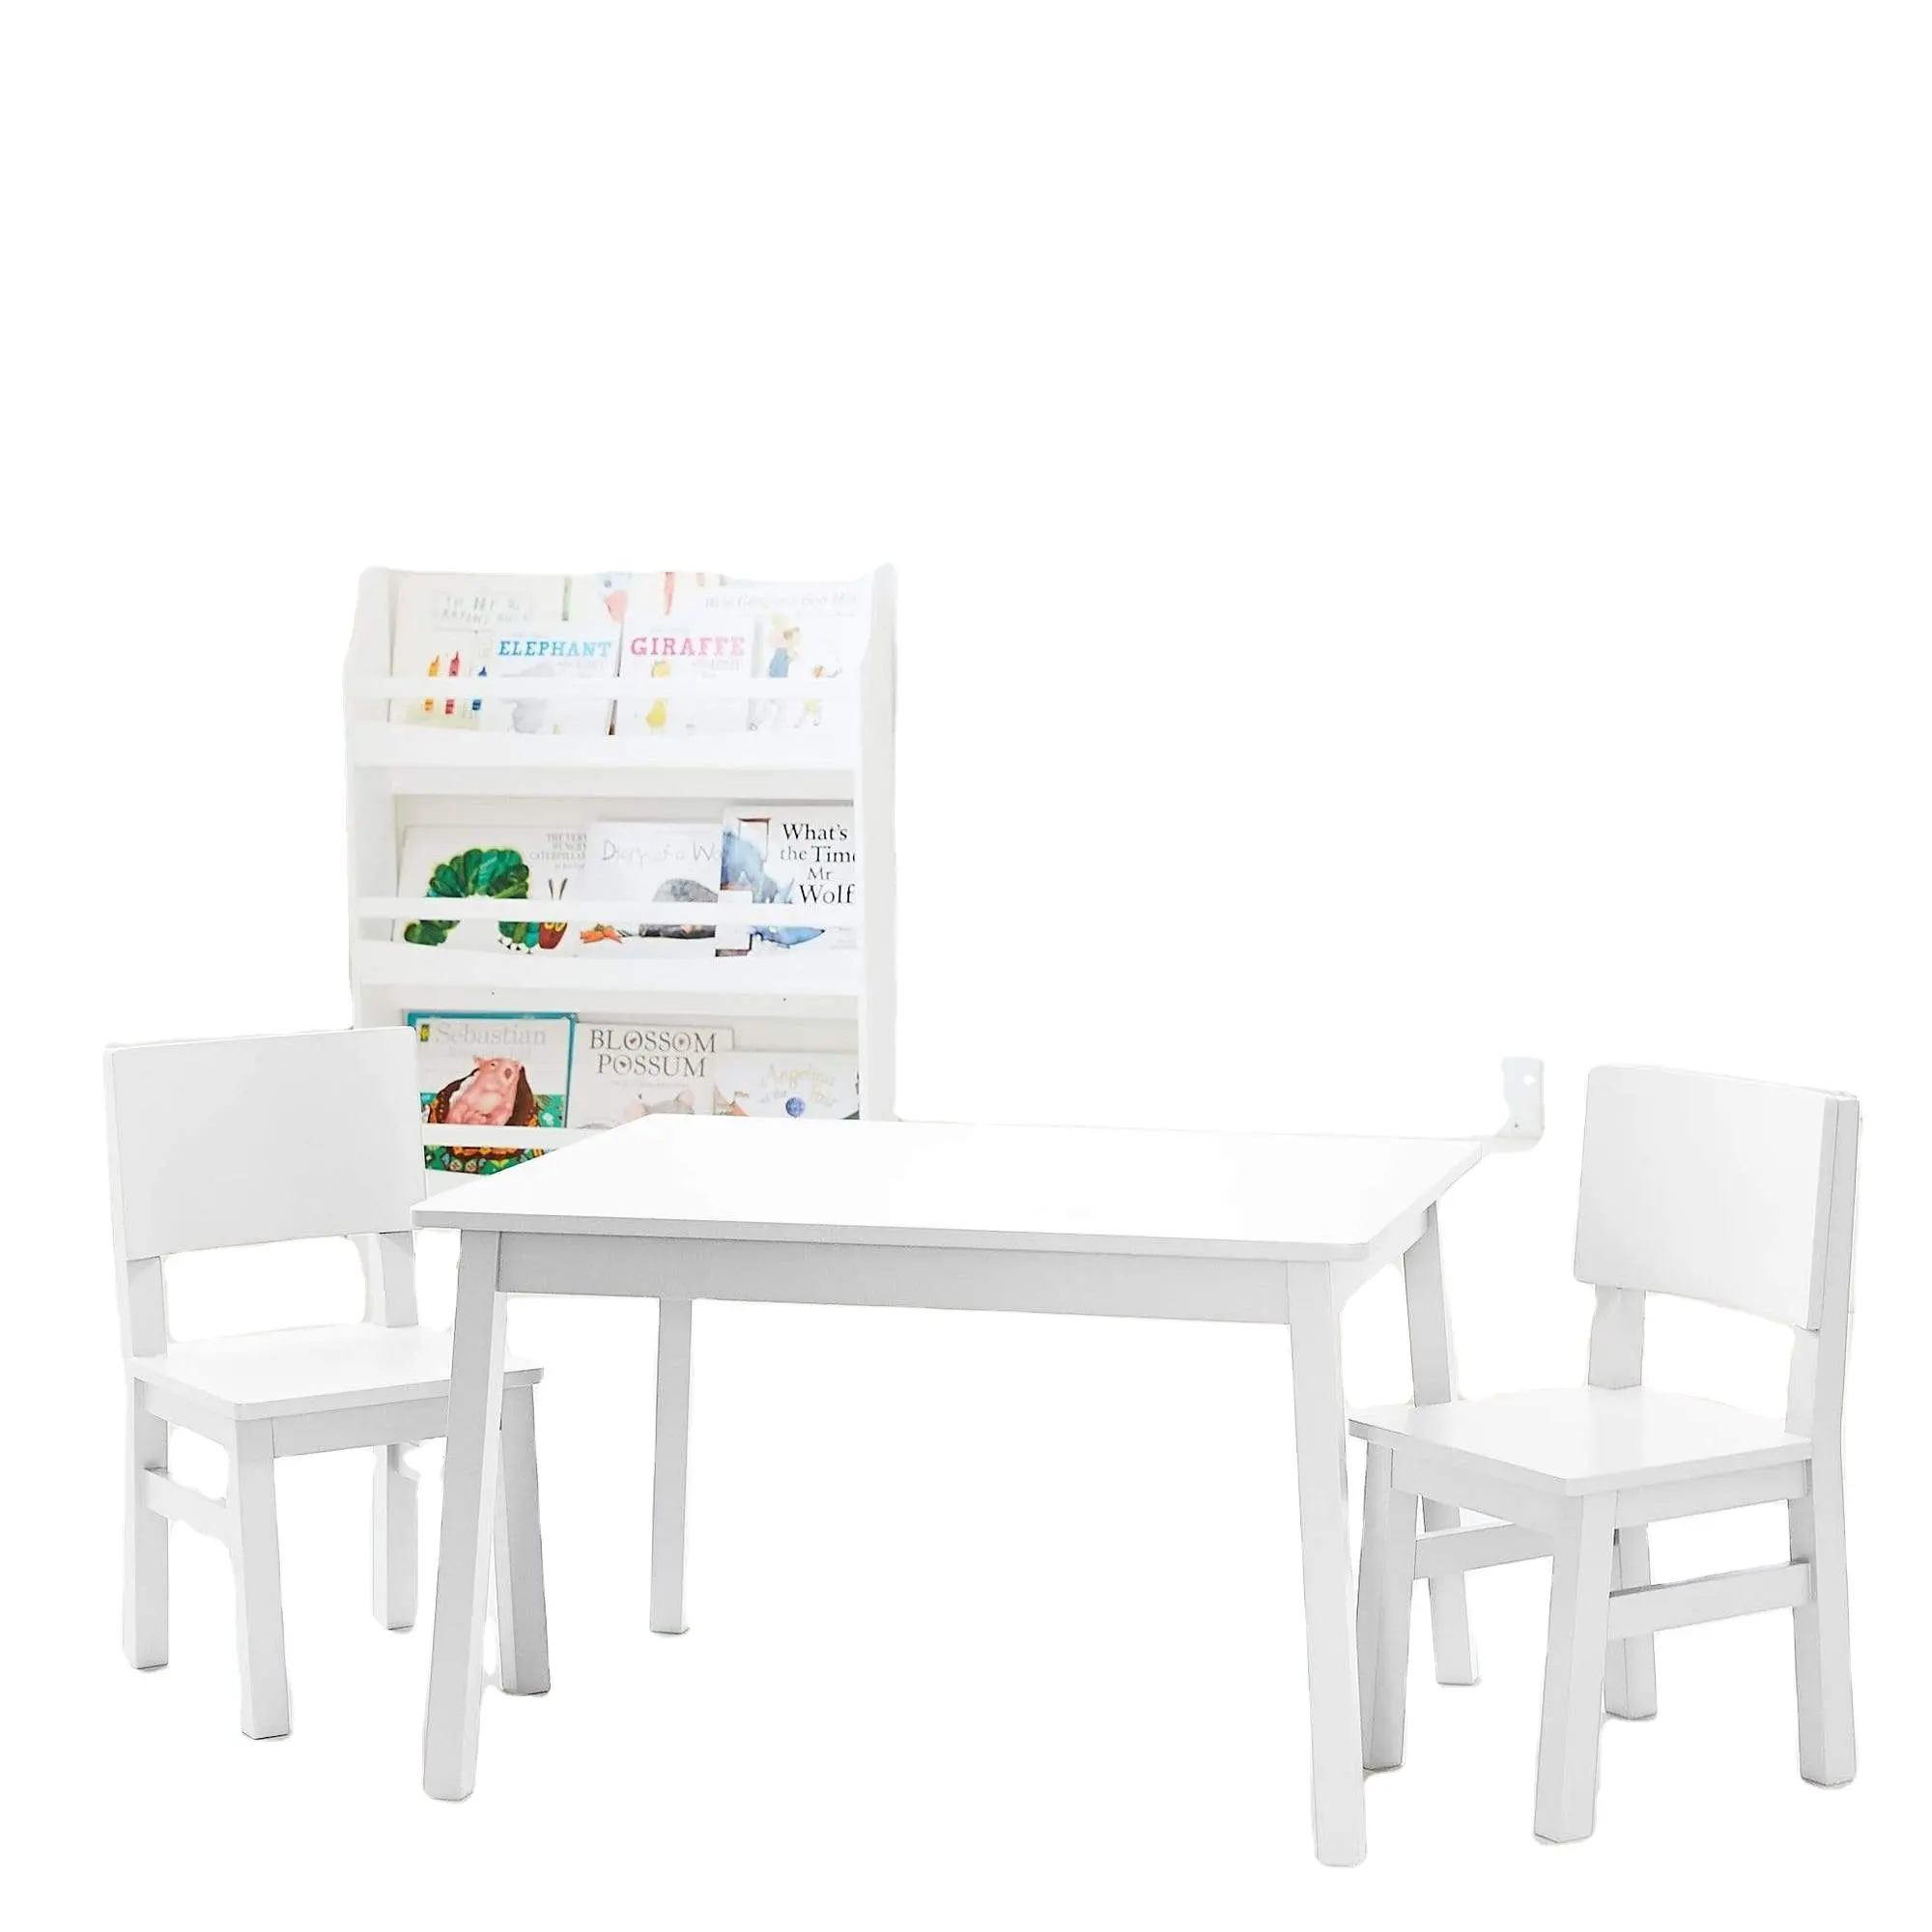 Mesa de juguete sencilla para niños, mesa de almacenamiento para sala de estar, sillas de oficina de buena calidad y mesa de estudio y juego de silla